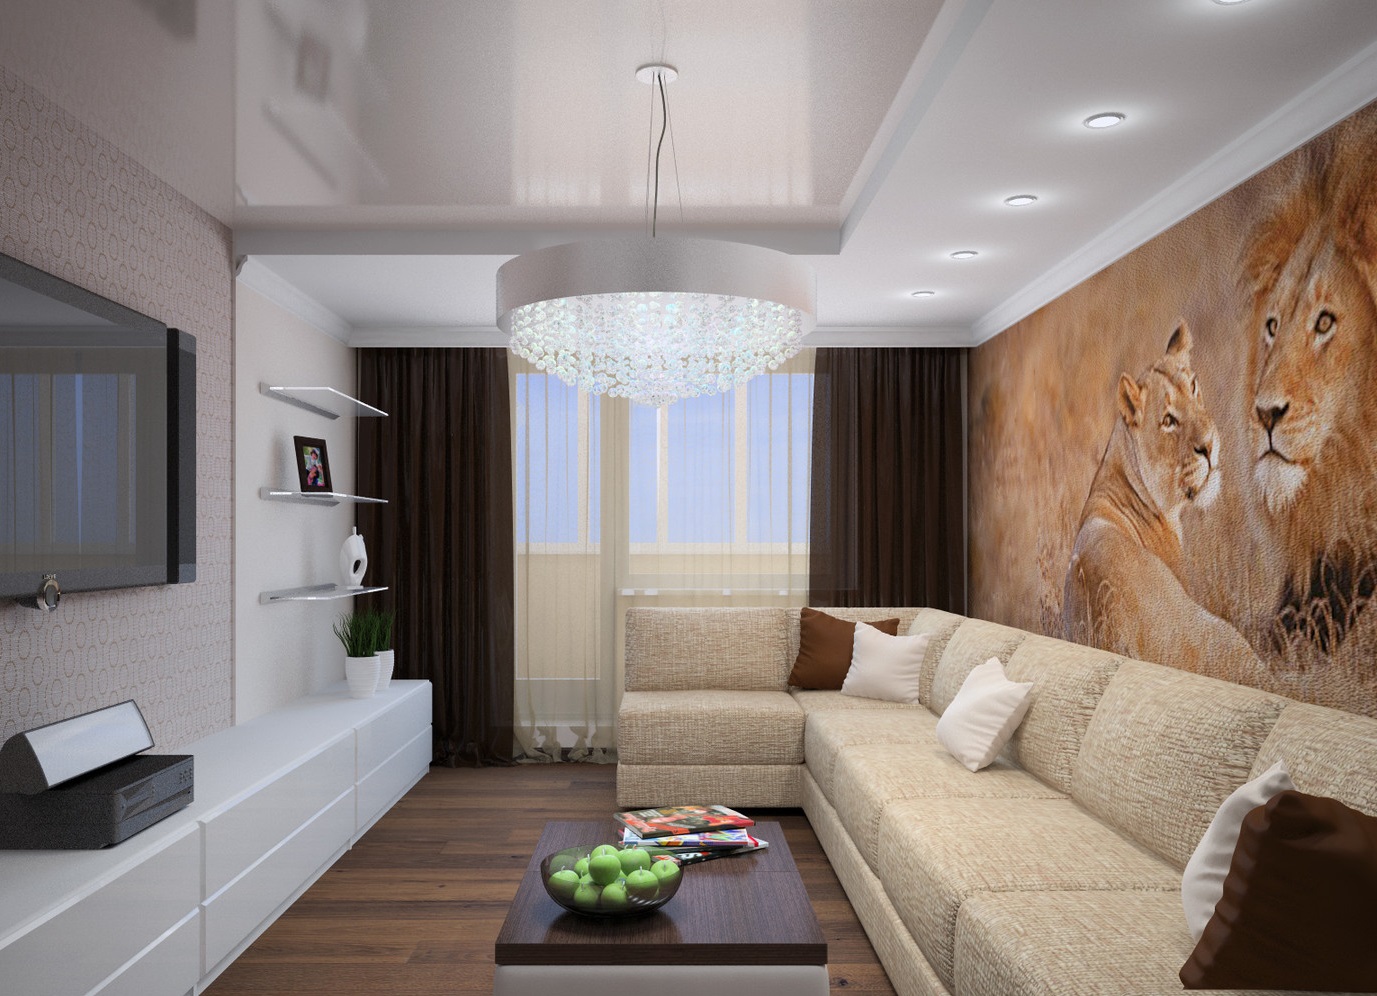 Заказать дизайн 3х квартиры с площадью 60 кв.м в Москве ✓ дизайн панельной трехкомнатной квартиры 60 кв м недорого